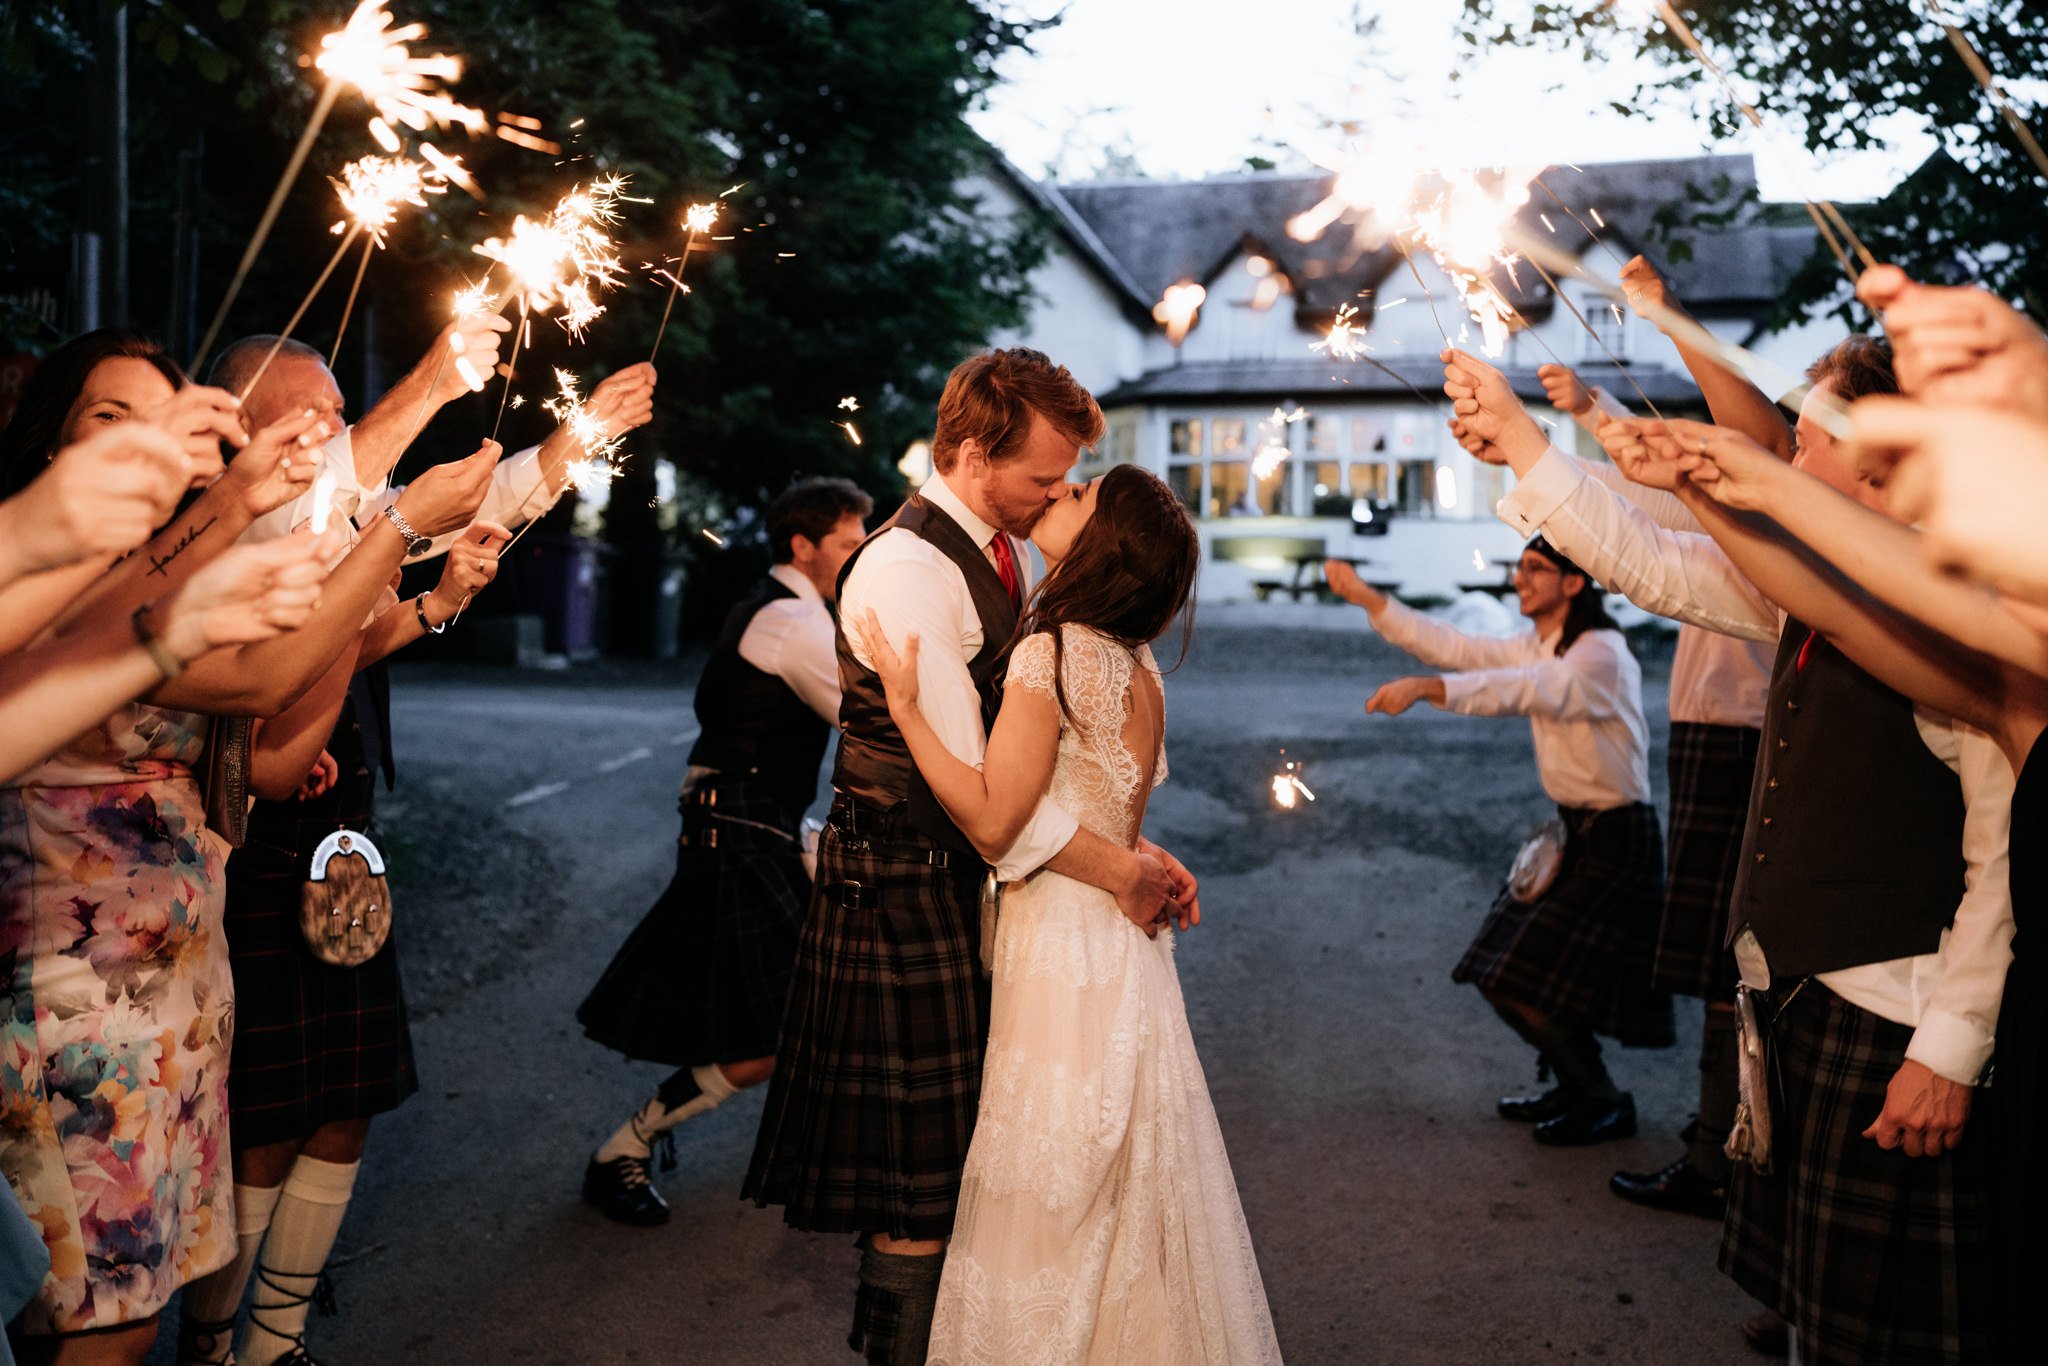 Glen Clova Hotel wedding photography | Aberdeenshire wedding photographer and videographer-79.jpg